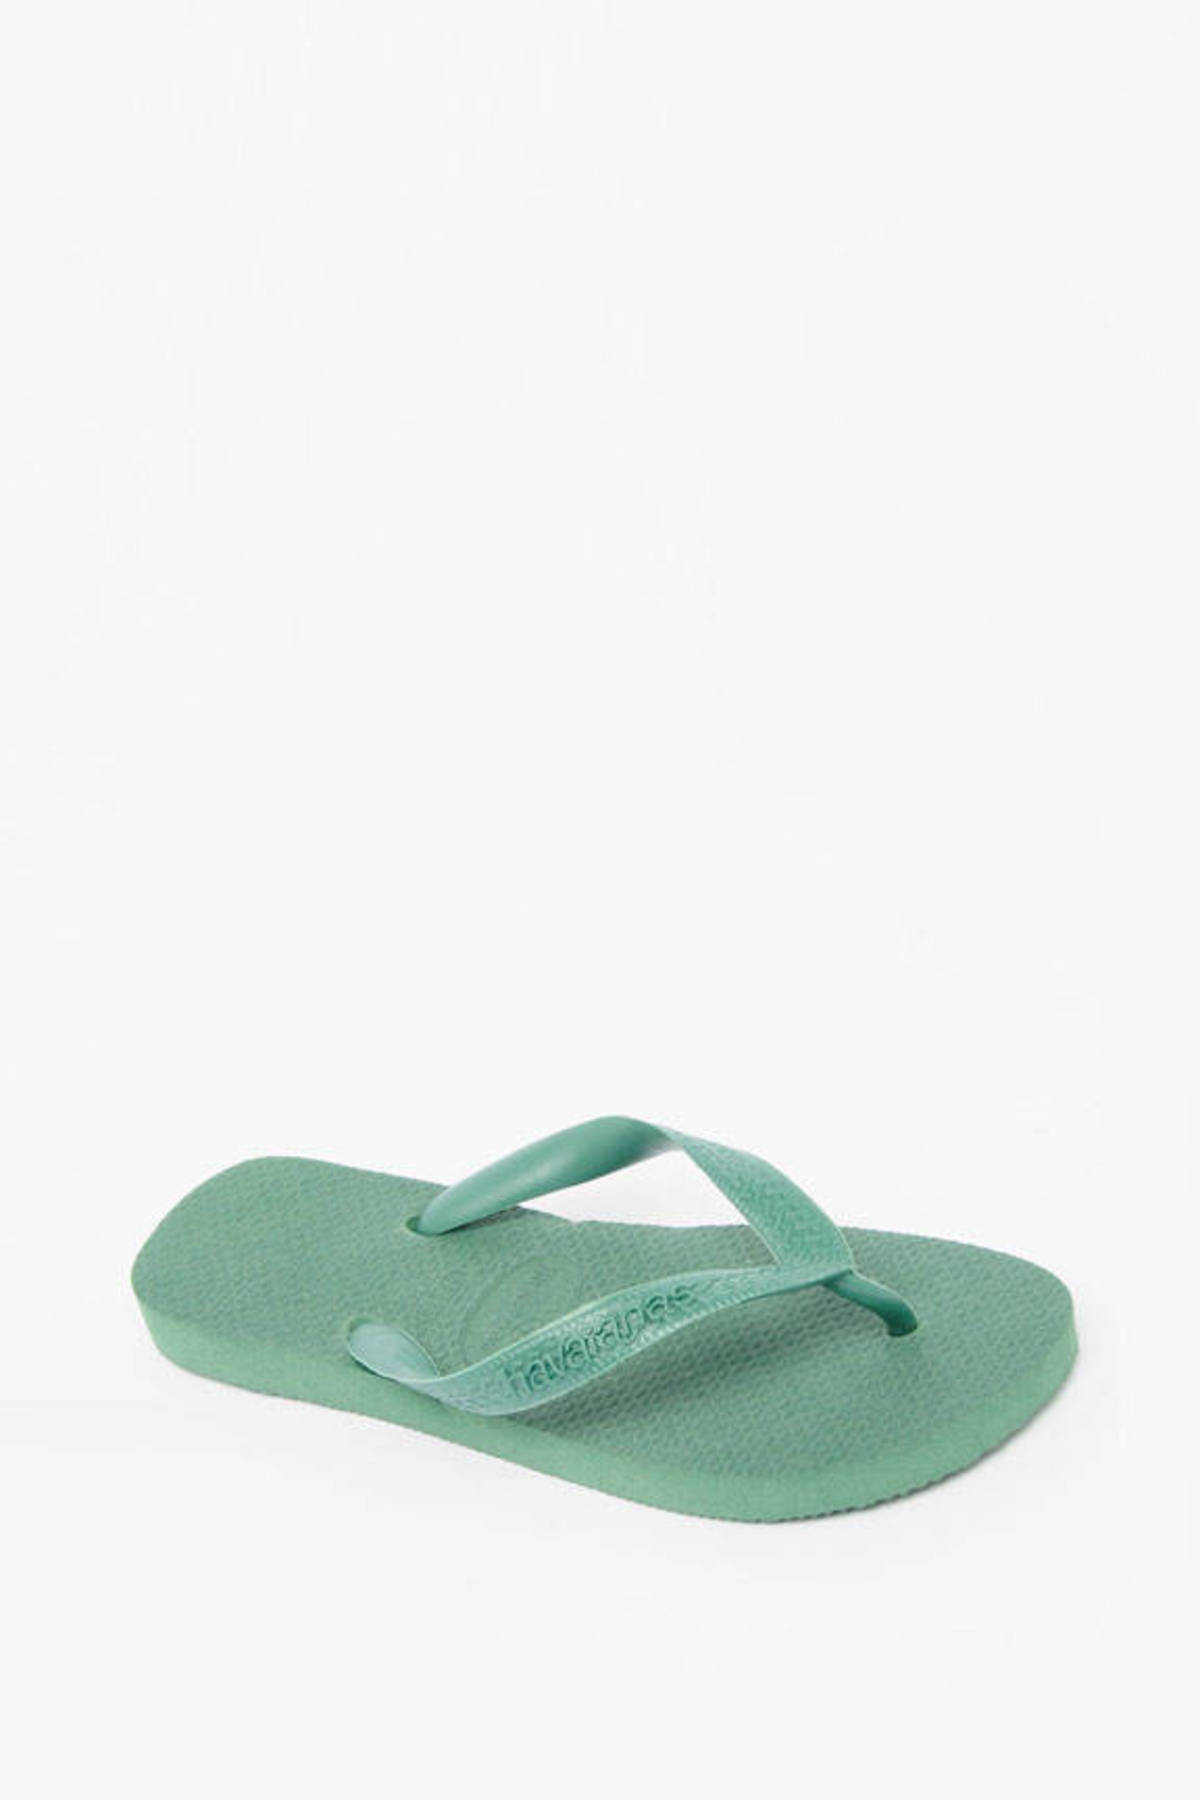 Top 8 Sandals in Moss Green - $10 | Tobi US